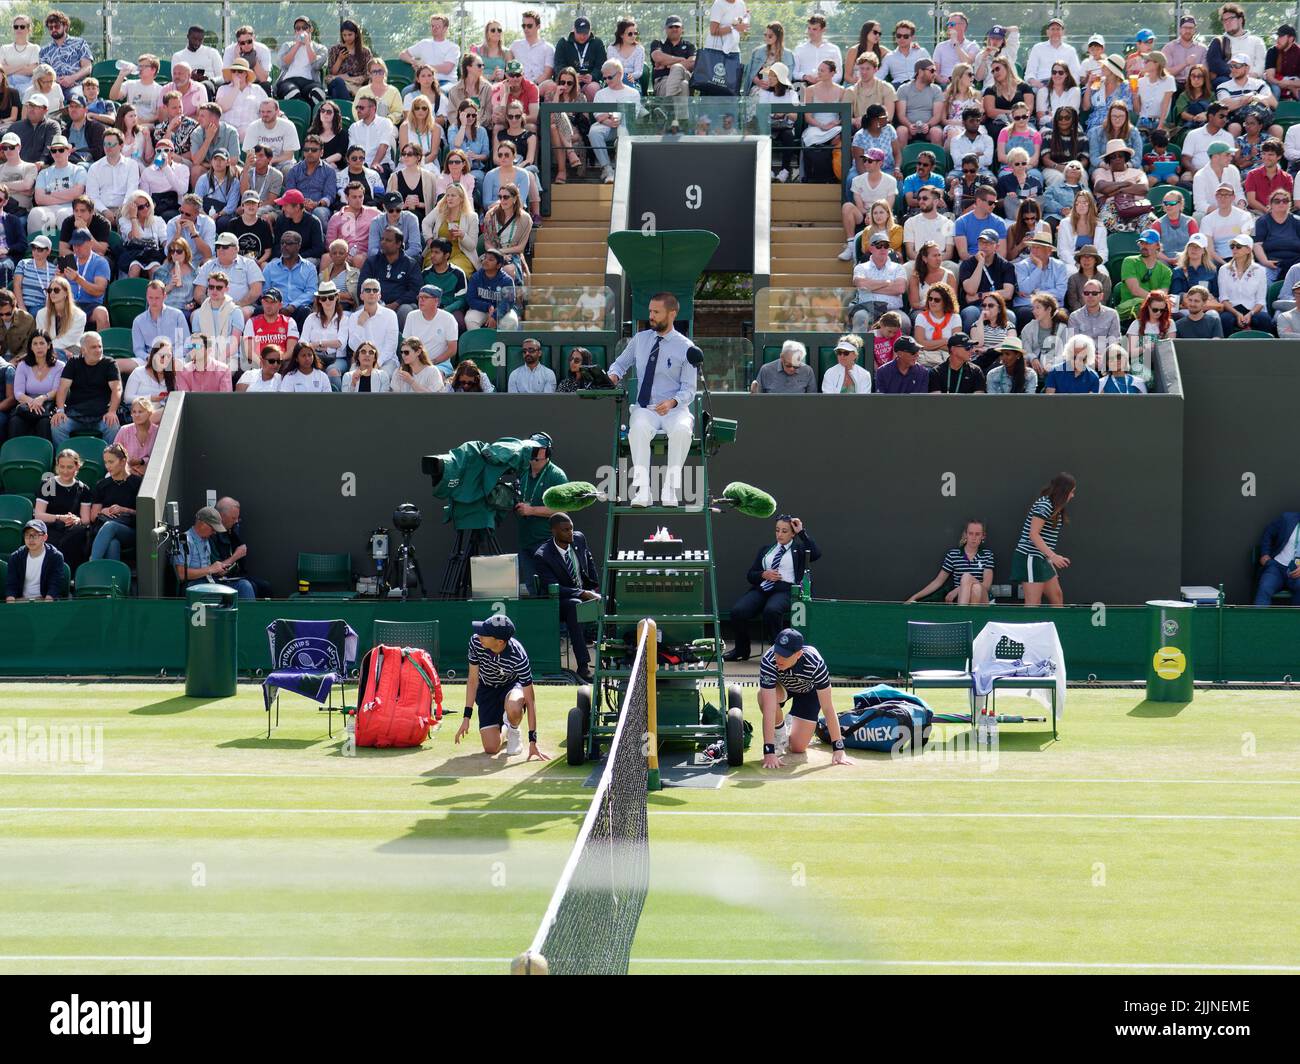 Wimbledon, Grand Londres, Angleterre, 02 juillet 2022: Championnat de tennis de Wimbledon. Juge-arbitre, spectateurs et garçons de balle lors d'un match de tennis sur le troisième terrain Banque D'Images